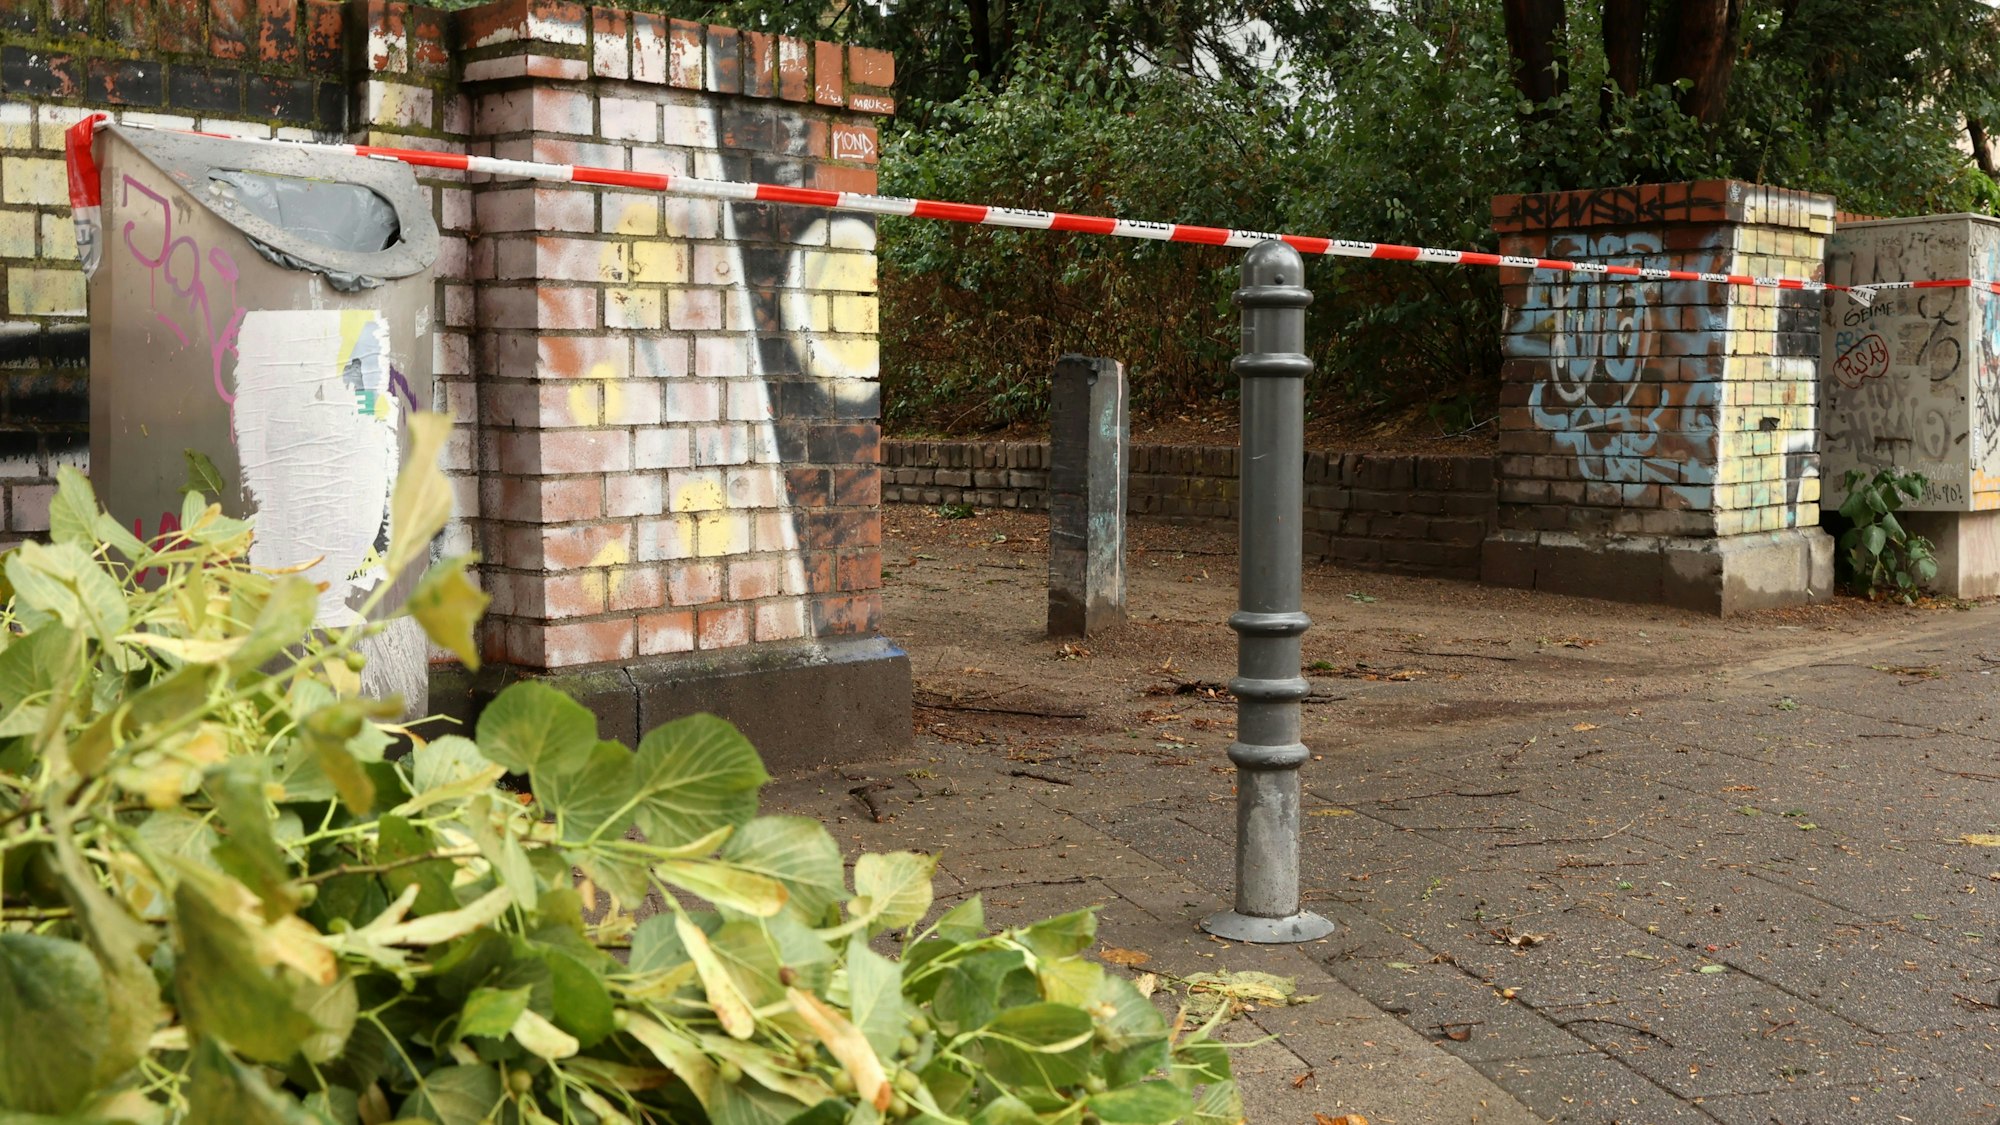 Unwetter in Köln am 24. Juli: Ein gesperrter Eingang zum Stadtgarten wegen der Gefahr von herabfallenden Ästen

